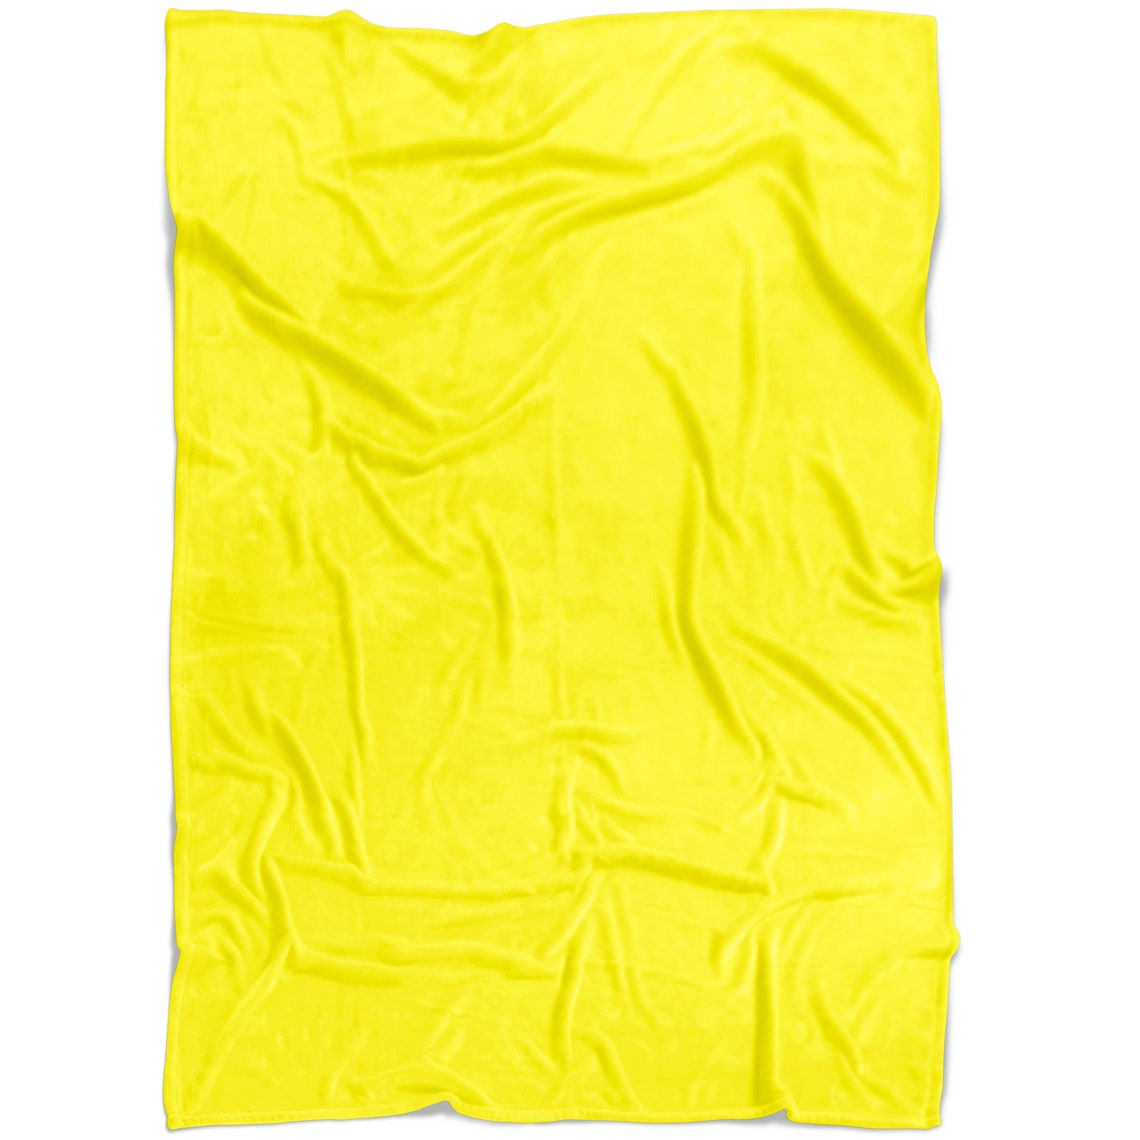 Yellow Fleece Blanket Pet Or Human Use | Etsy